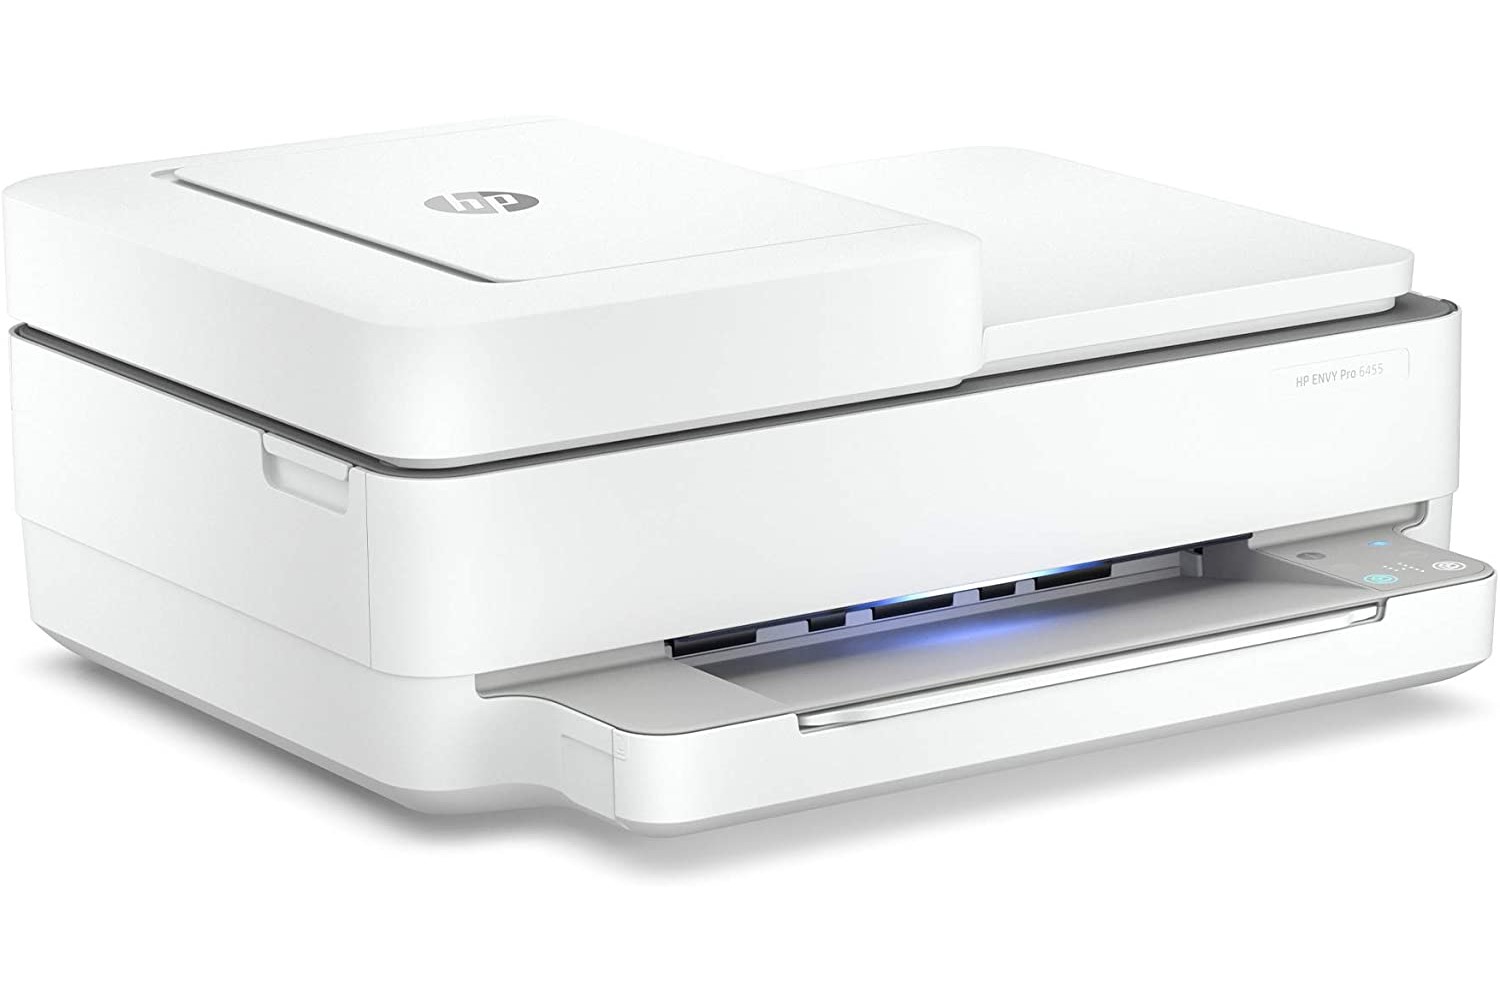 HP Envy 6455e ऑल-इन-वन प्रिंटर स्टैंडबाय पर, सफ़ेद बैकग्राउंड पर।